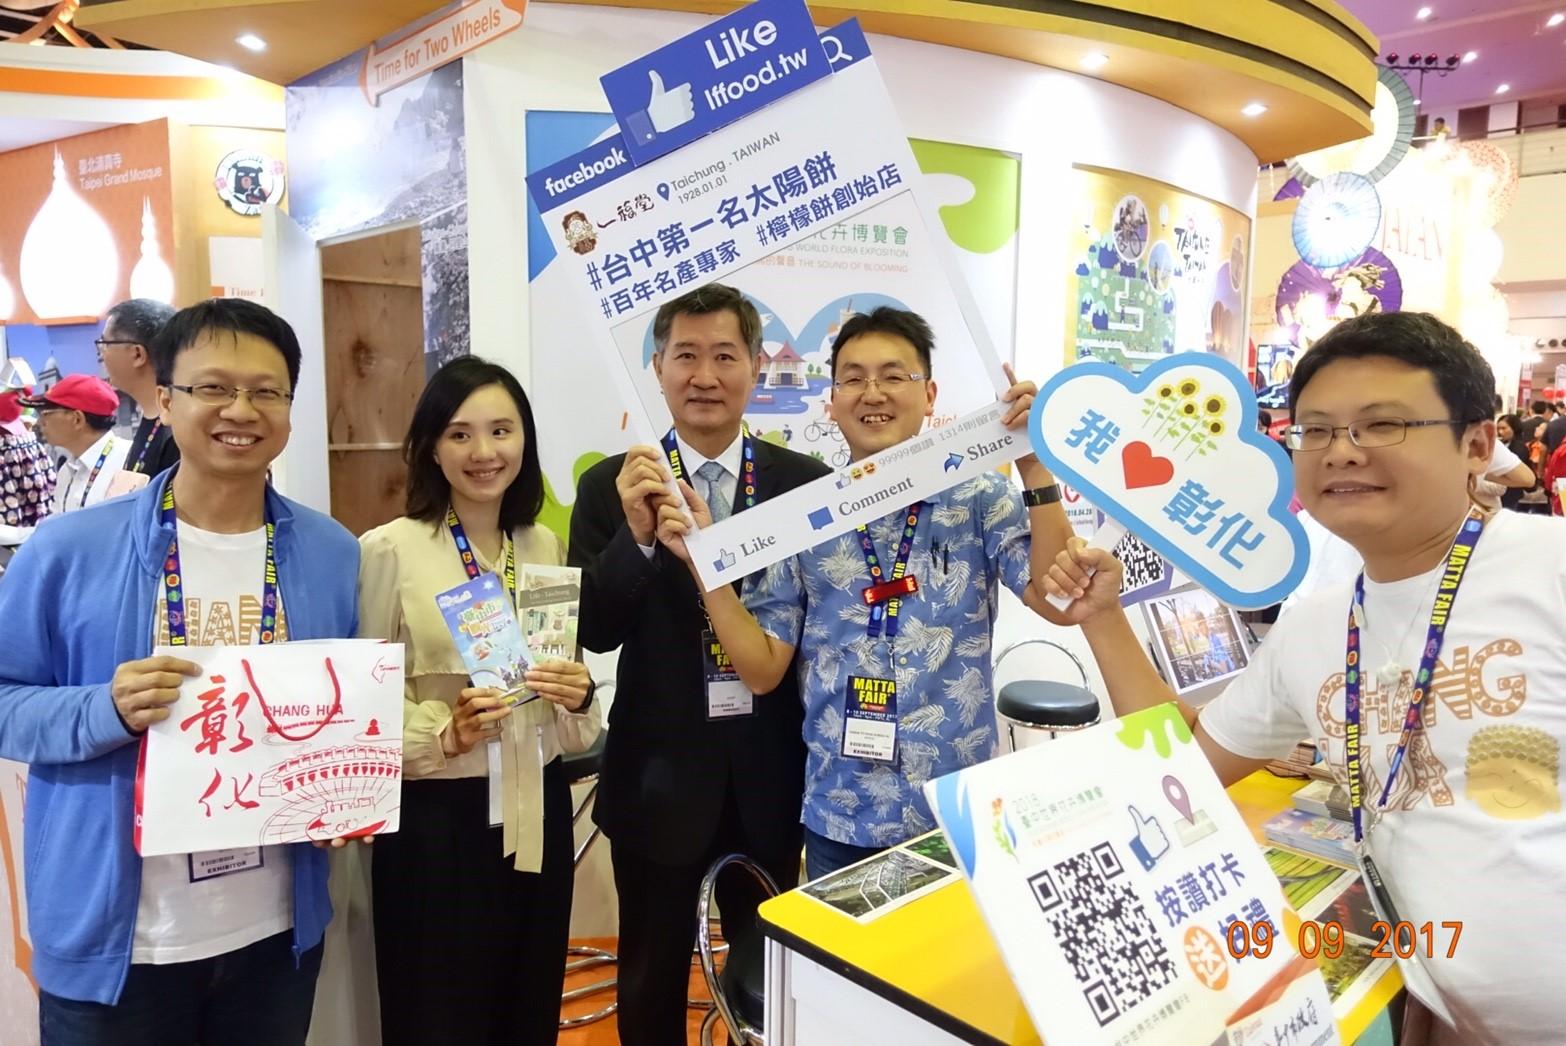 Pameran KL MATTA Fair 2017 telah diadakan di PWTC pada 8 – 9 September 2017, Timbalan Wakil Michael S.Y.Yinn melawati Taiwan Pavilion pada 9 September 2017 dan mengucapkan terima kasih kepada delegasi Taiwan atas usaha mereka mempromosikan sektor pelancongan Taiwan !